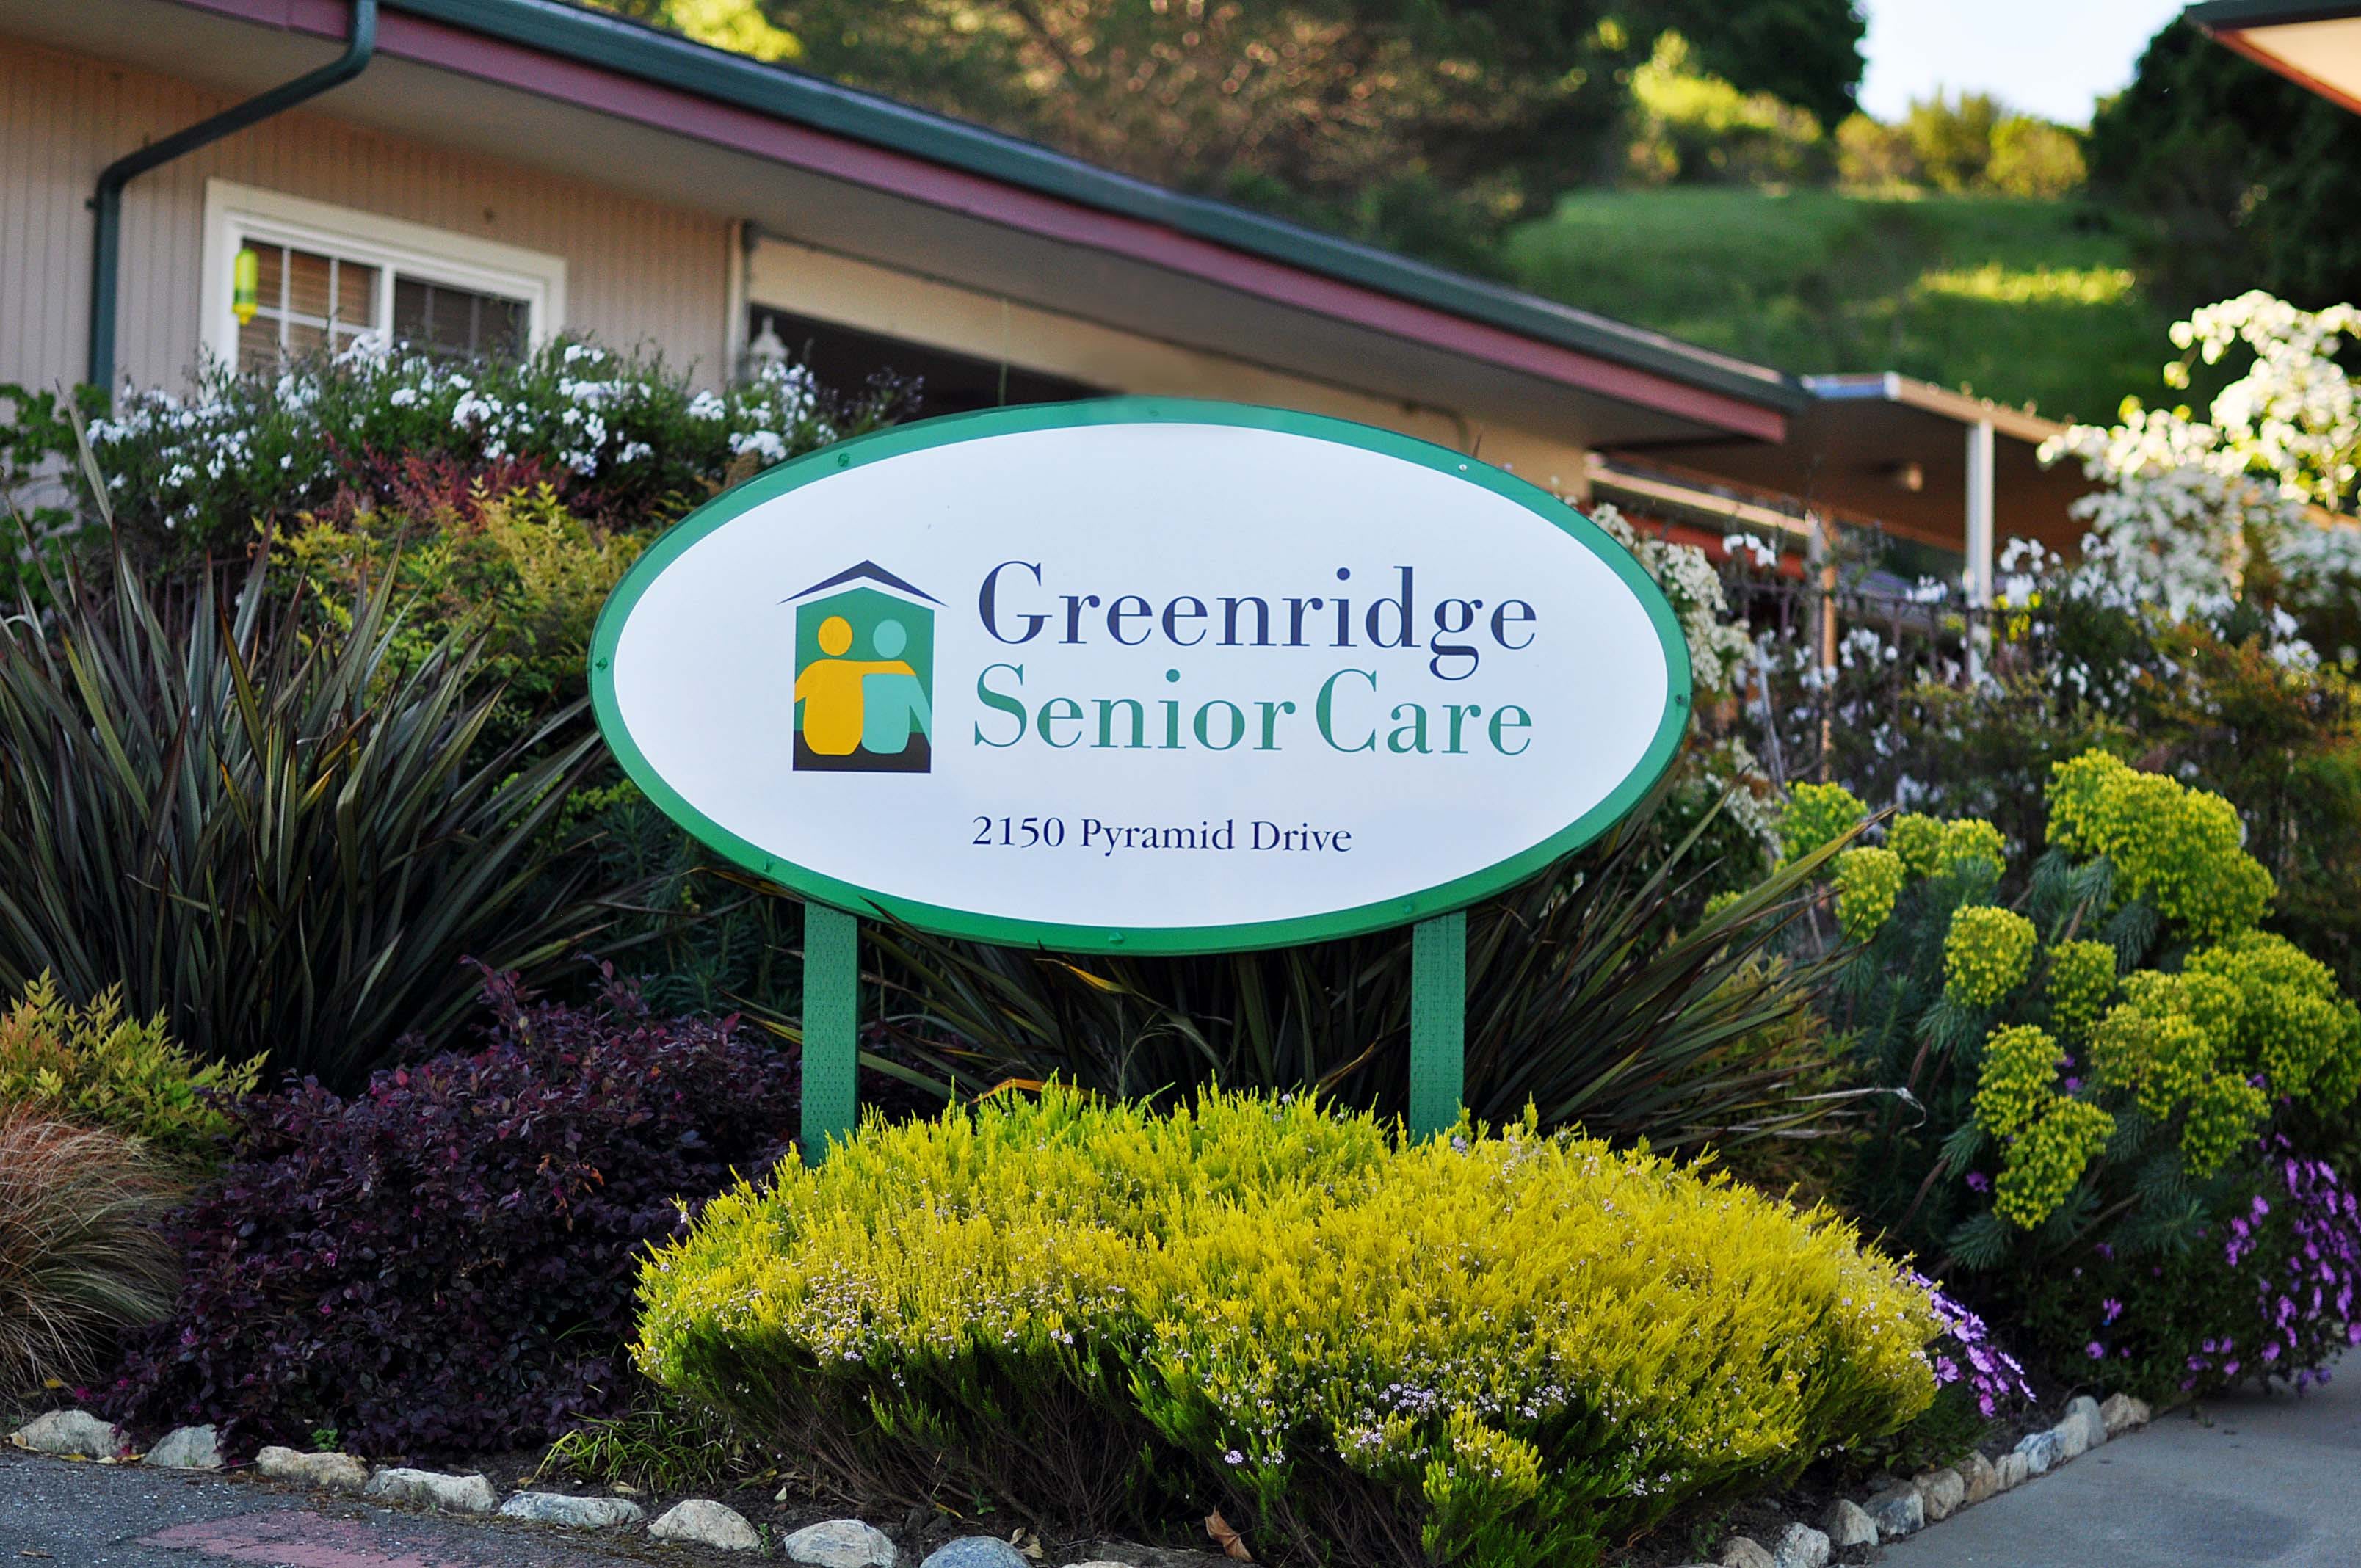 Greenridge Senior Care outdoor common area